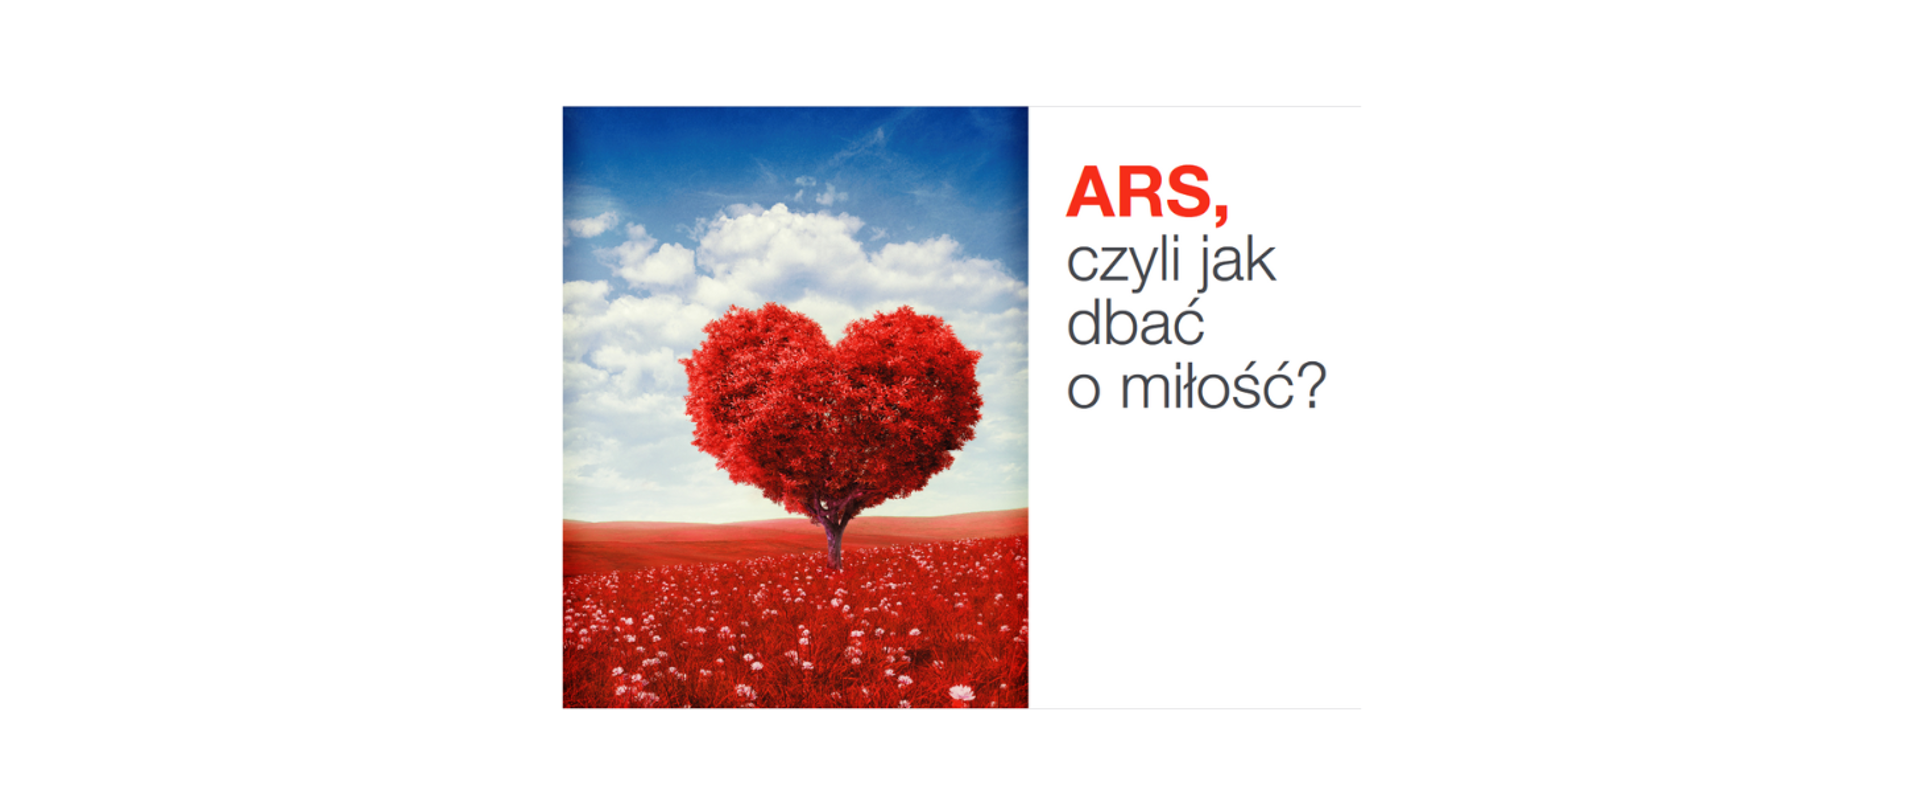 Na białym tle na środku logo programu ARS, czyli jak dbać o miłość?. Z prawej strony czerwony napis "ARS" z czarnym dopiskiem "czyli jak dbać o miłość?". z Lewej strony na zdjęciu drzewo z koroną drzewa w kształcie czerwonego serca, stojące na czerwonej łące, w tle niebieskie niebo z białymi chmurami.